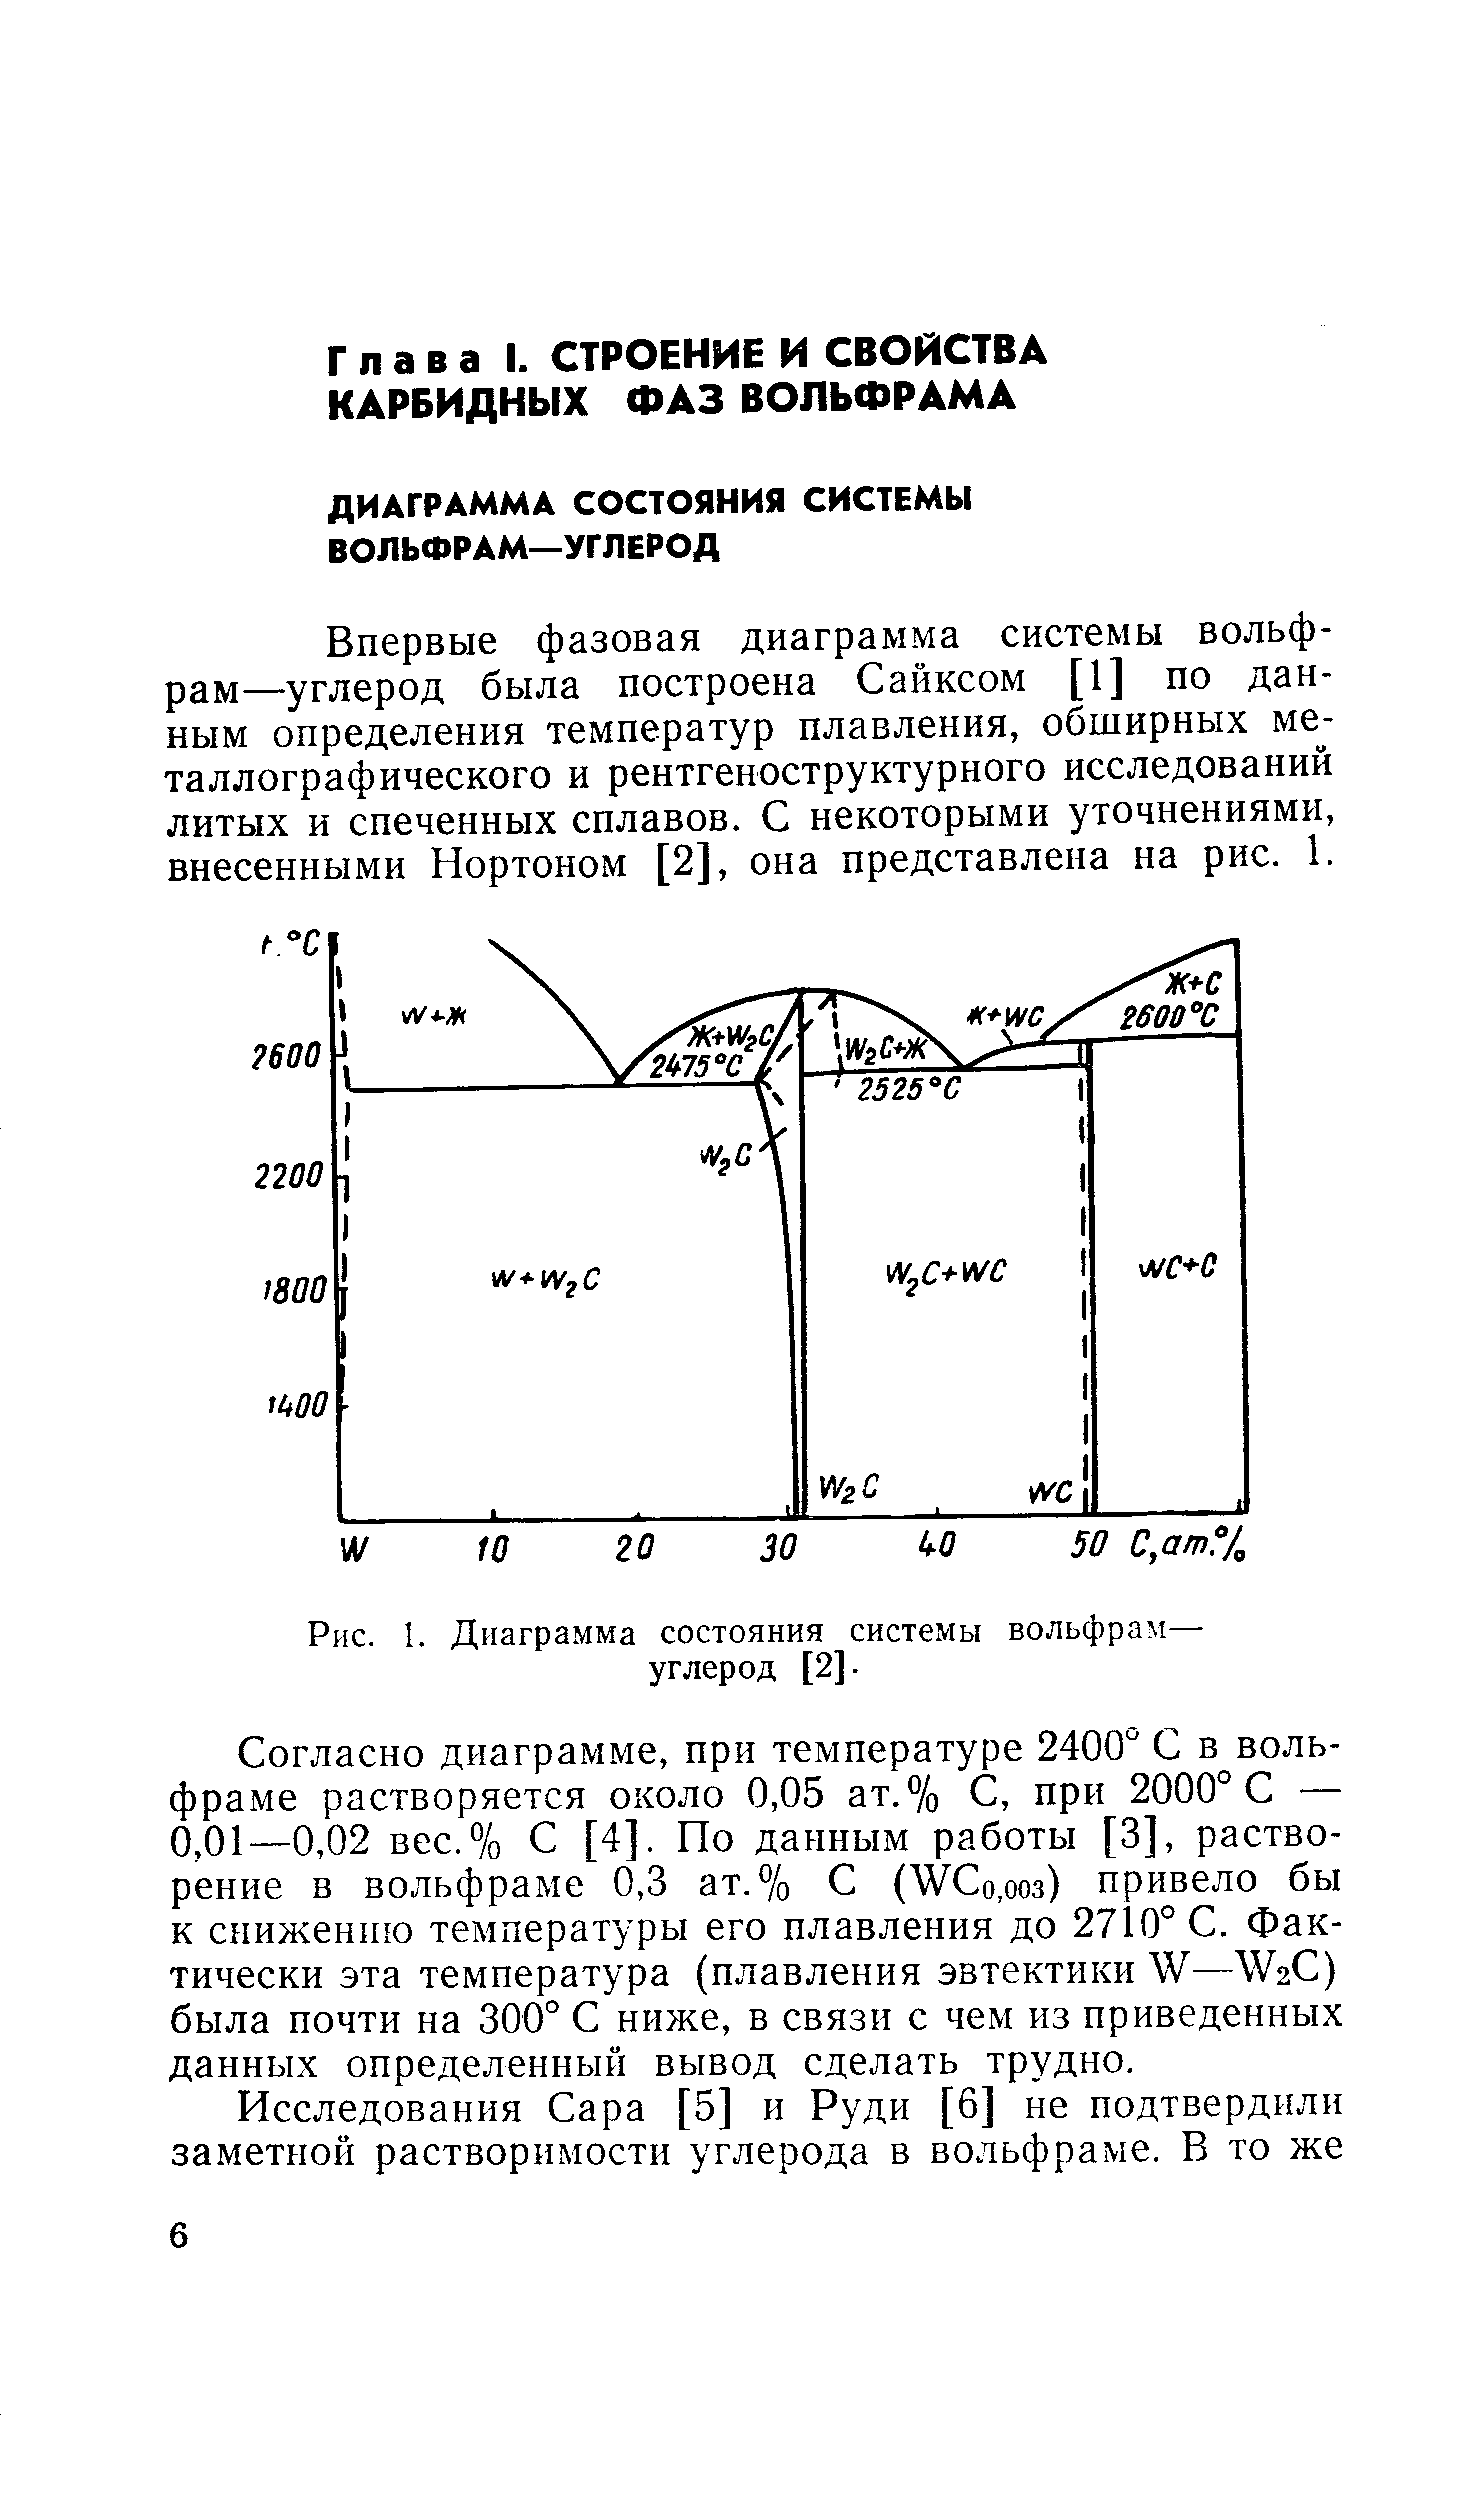 Впервые фазовая диаграмма системы вольфрам—углерод была построена Сайксом [1] по данным определения температур плавления, обширных металлографического и рентгеноструктурного исследований литых и спеченных сплавов. С некоторыми уточнениями, внесенными Нортоном [2], она представлена на рис. 1.